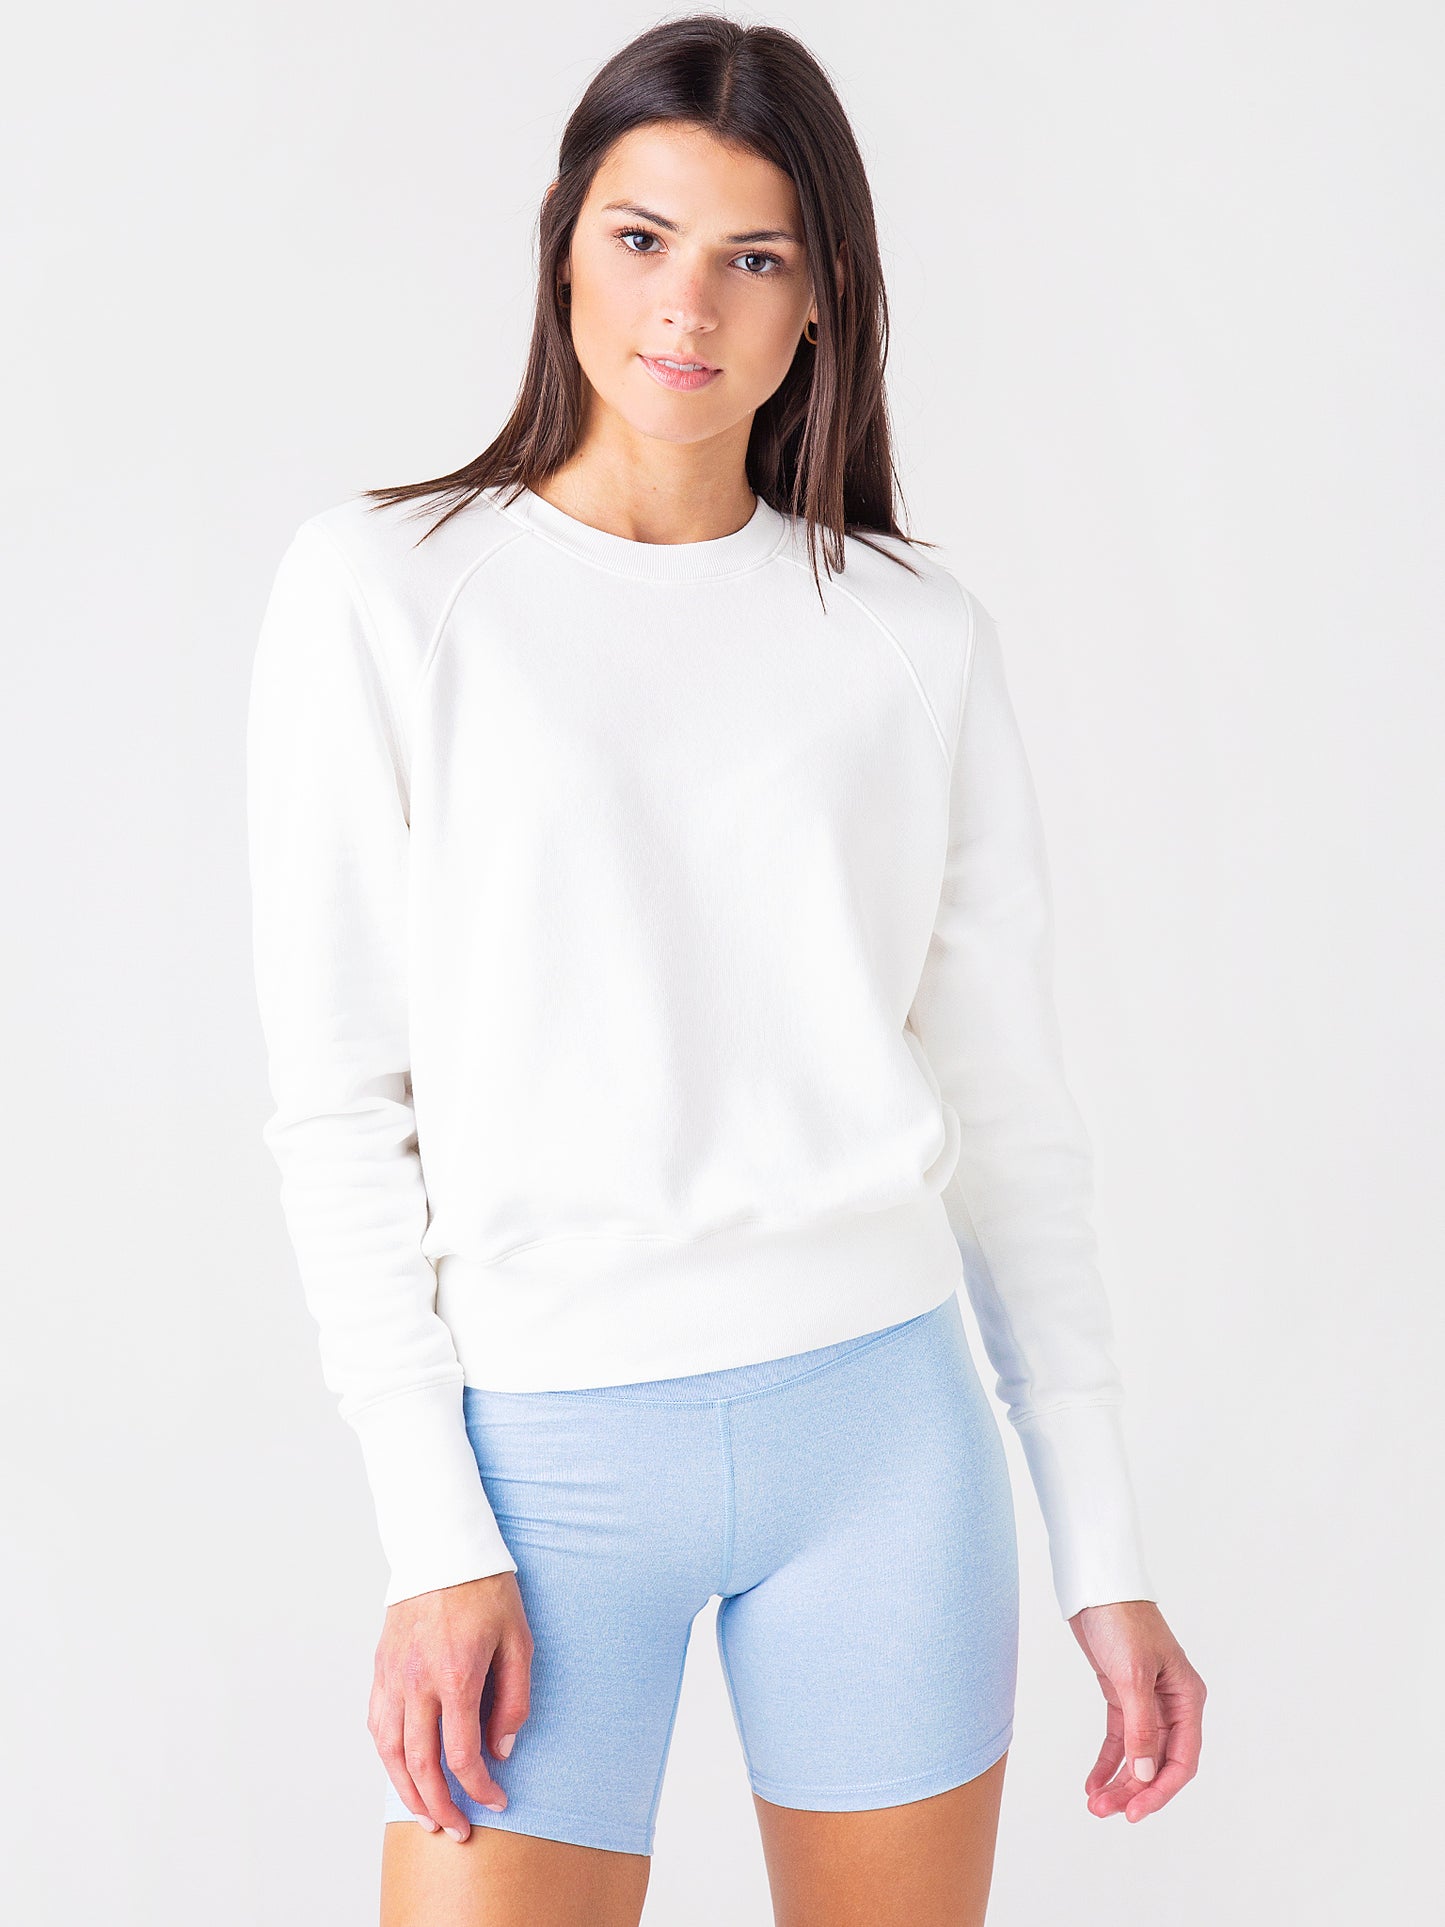 ATM Women's French Terry Garment Dye Vintage Raglan Sweater